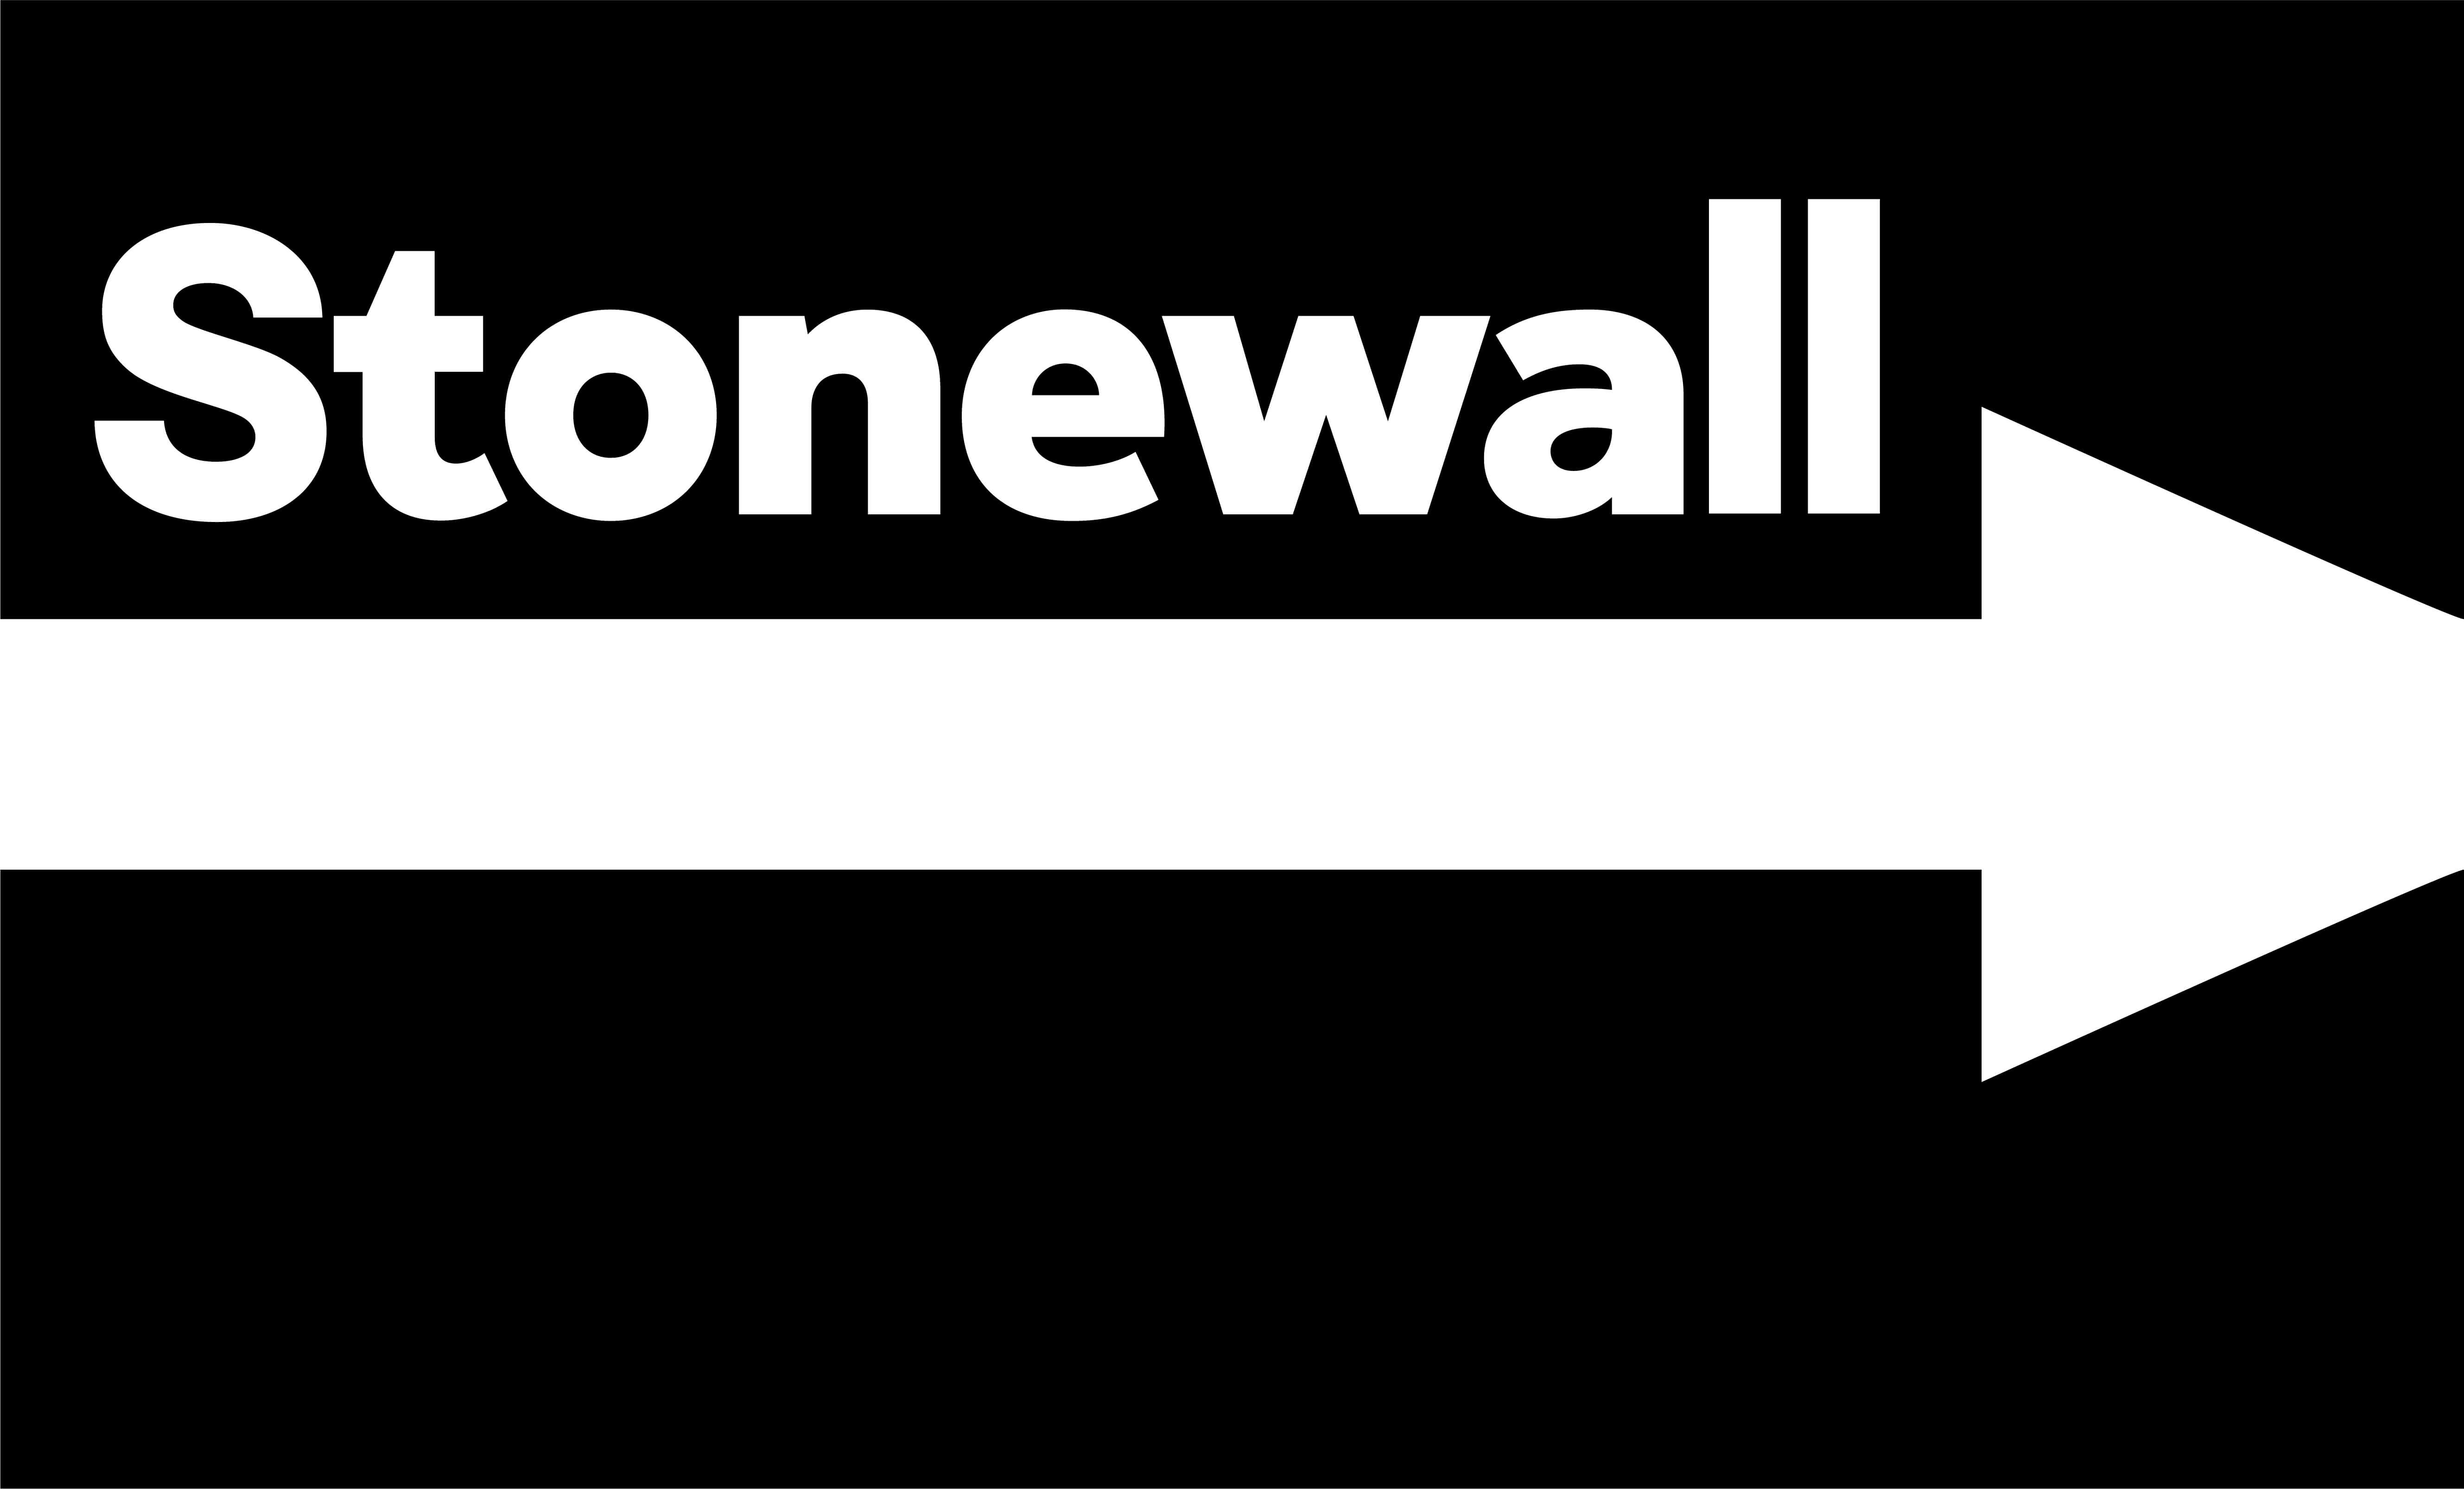 Stonewall’s logo